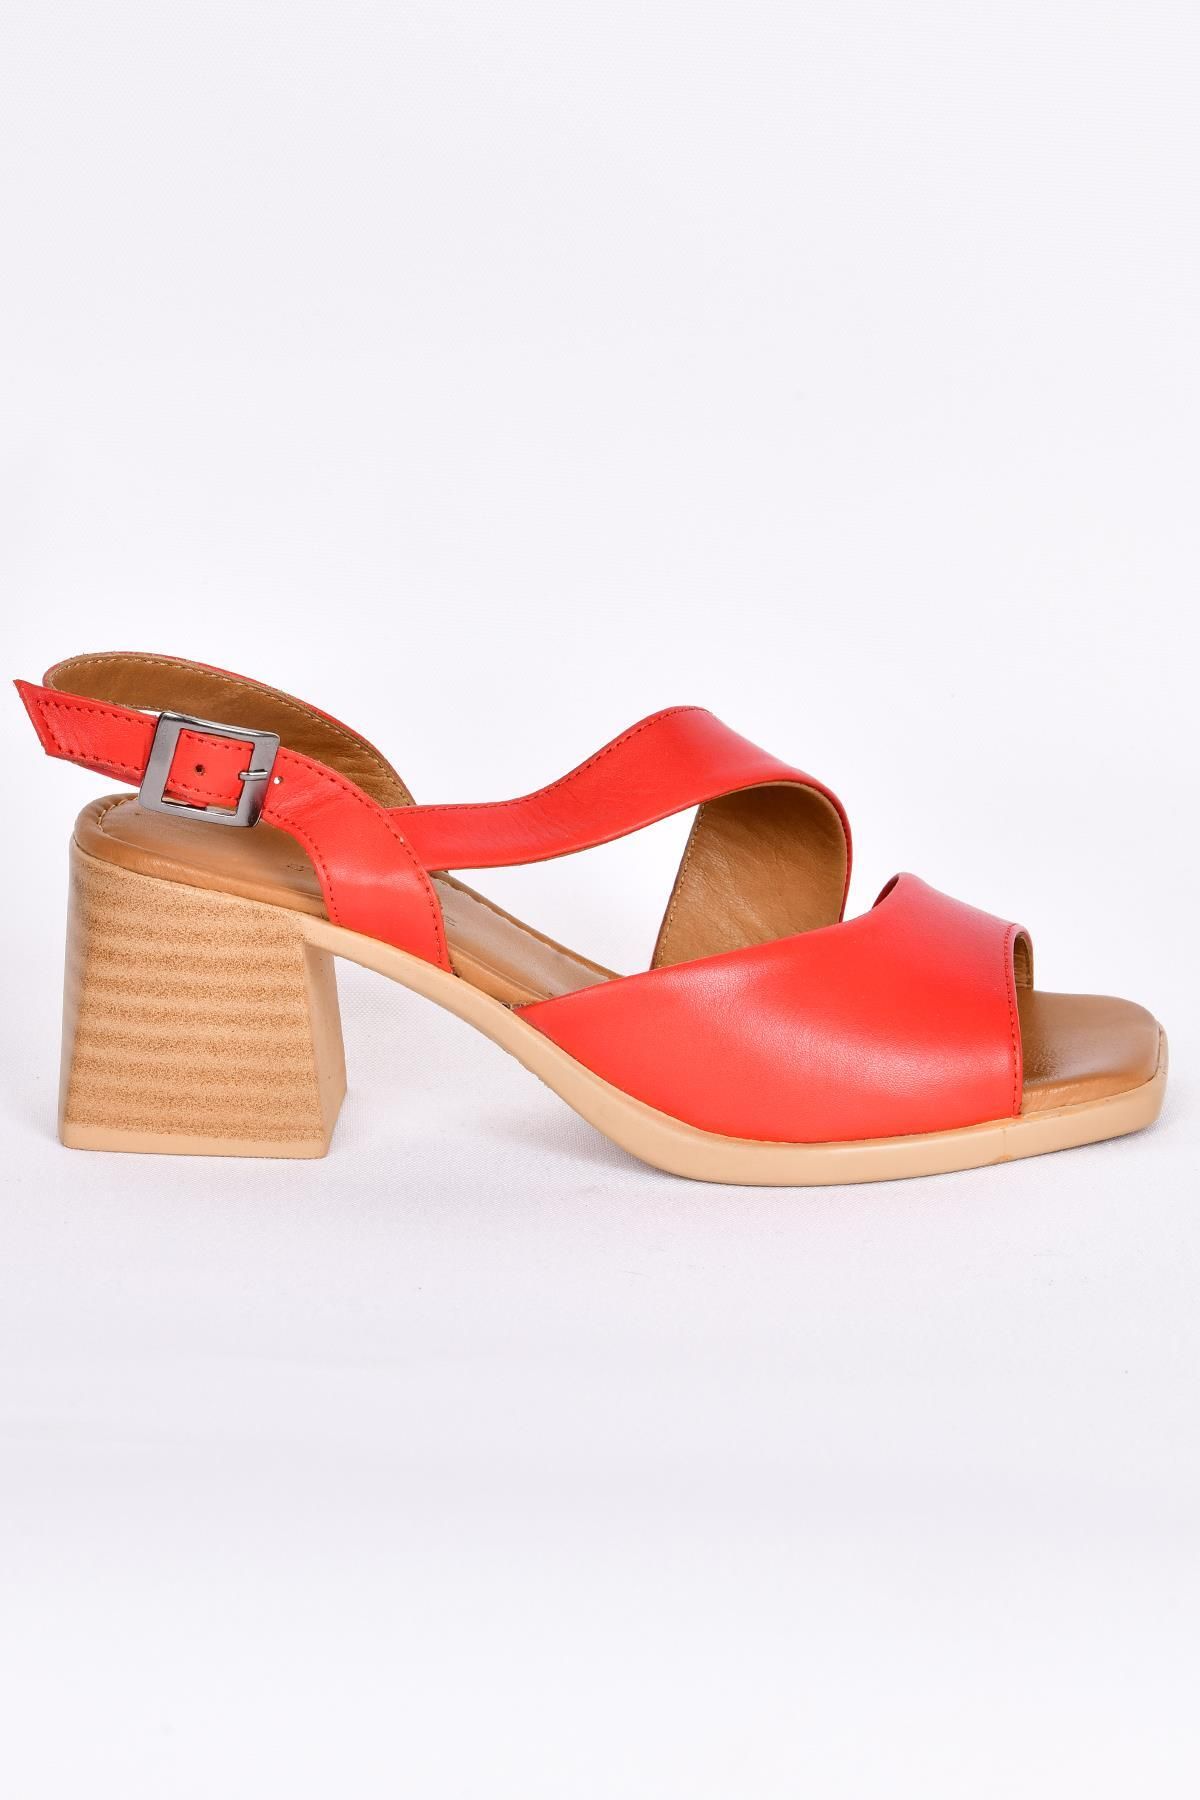 STEP MORE Z13458 Kadın Kırmızı Topuklu Sandalet